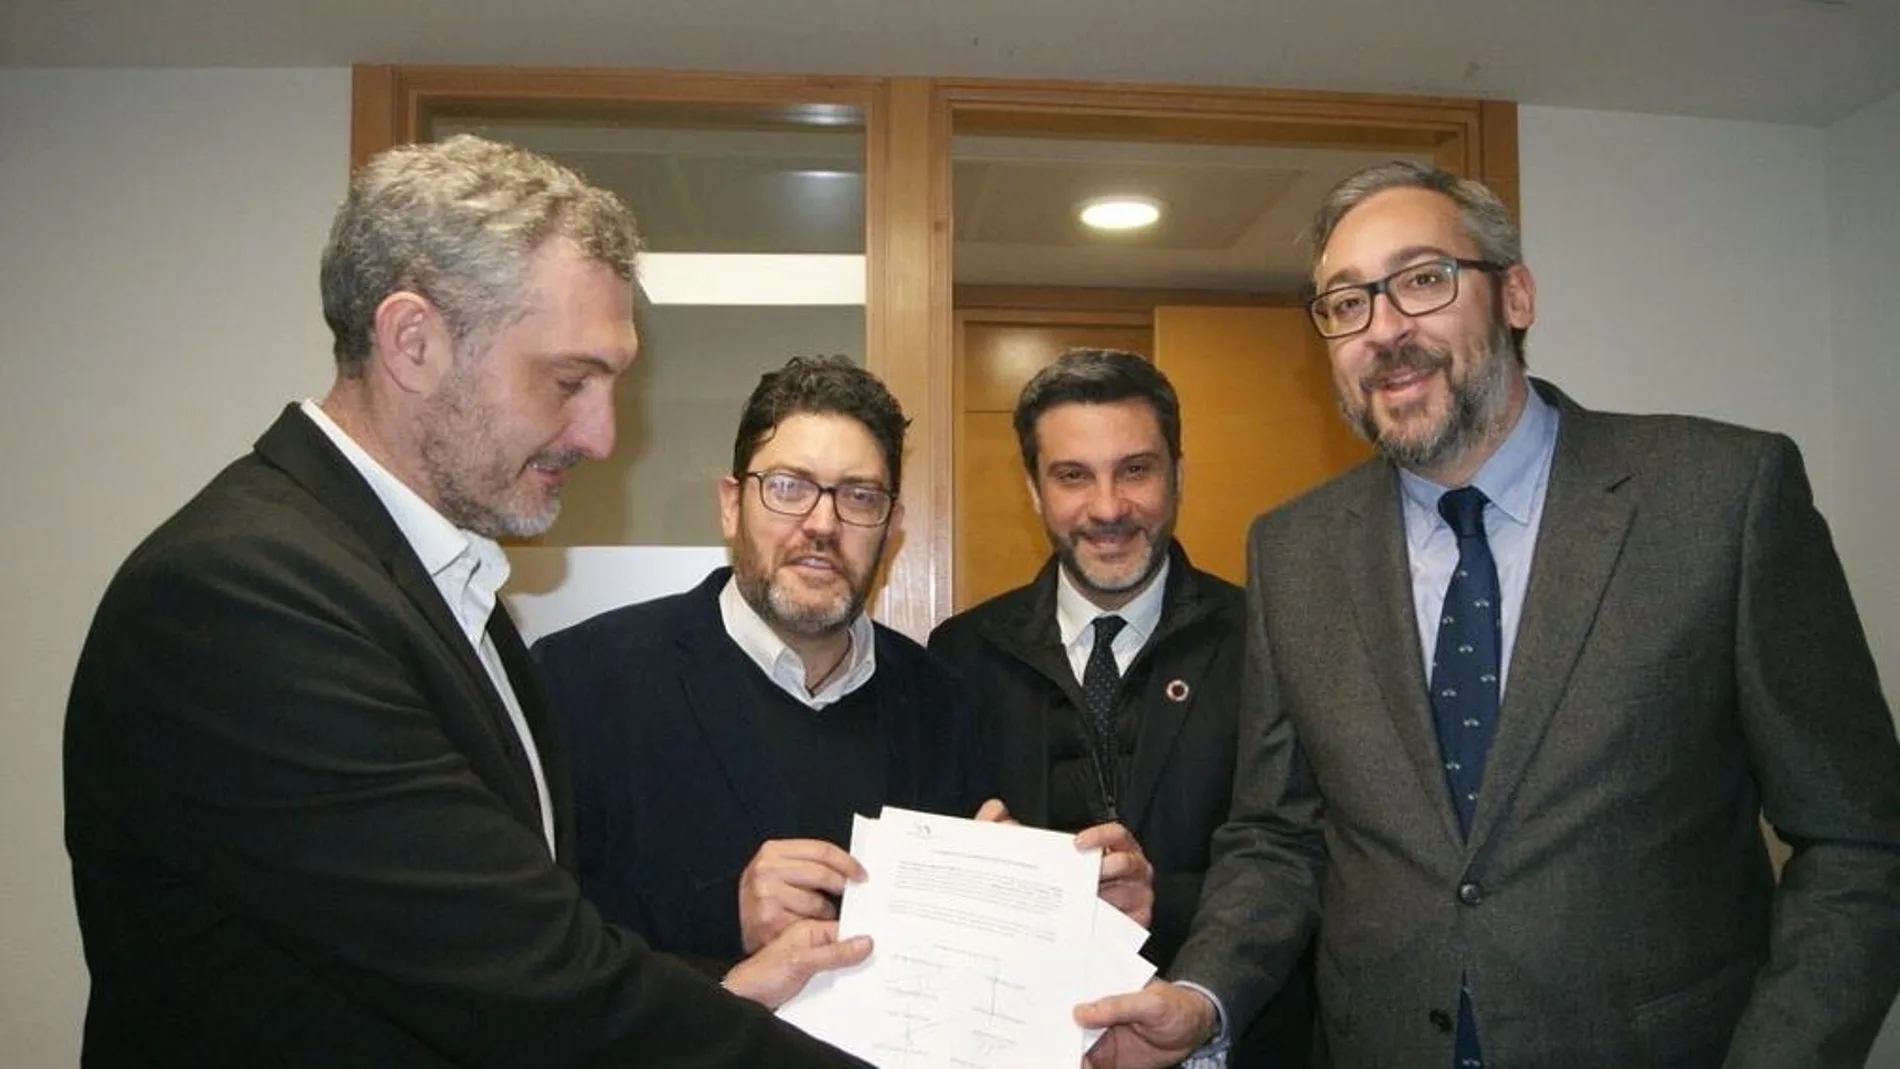 Los portavoces de los cuatro partidos parlamentarios. De izquierda a derecha, Óscar Urralburu (Podemos), Miguel Sánchez (Cs), Joaquín López Pagán (PSOE) y Víctor Martínez (PP), en una foto de archivo